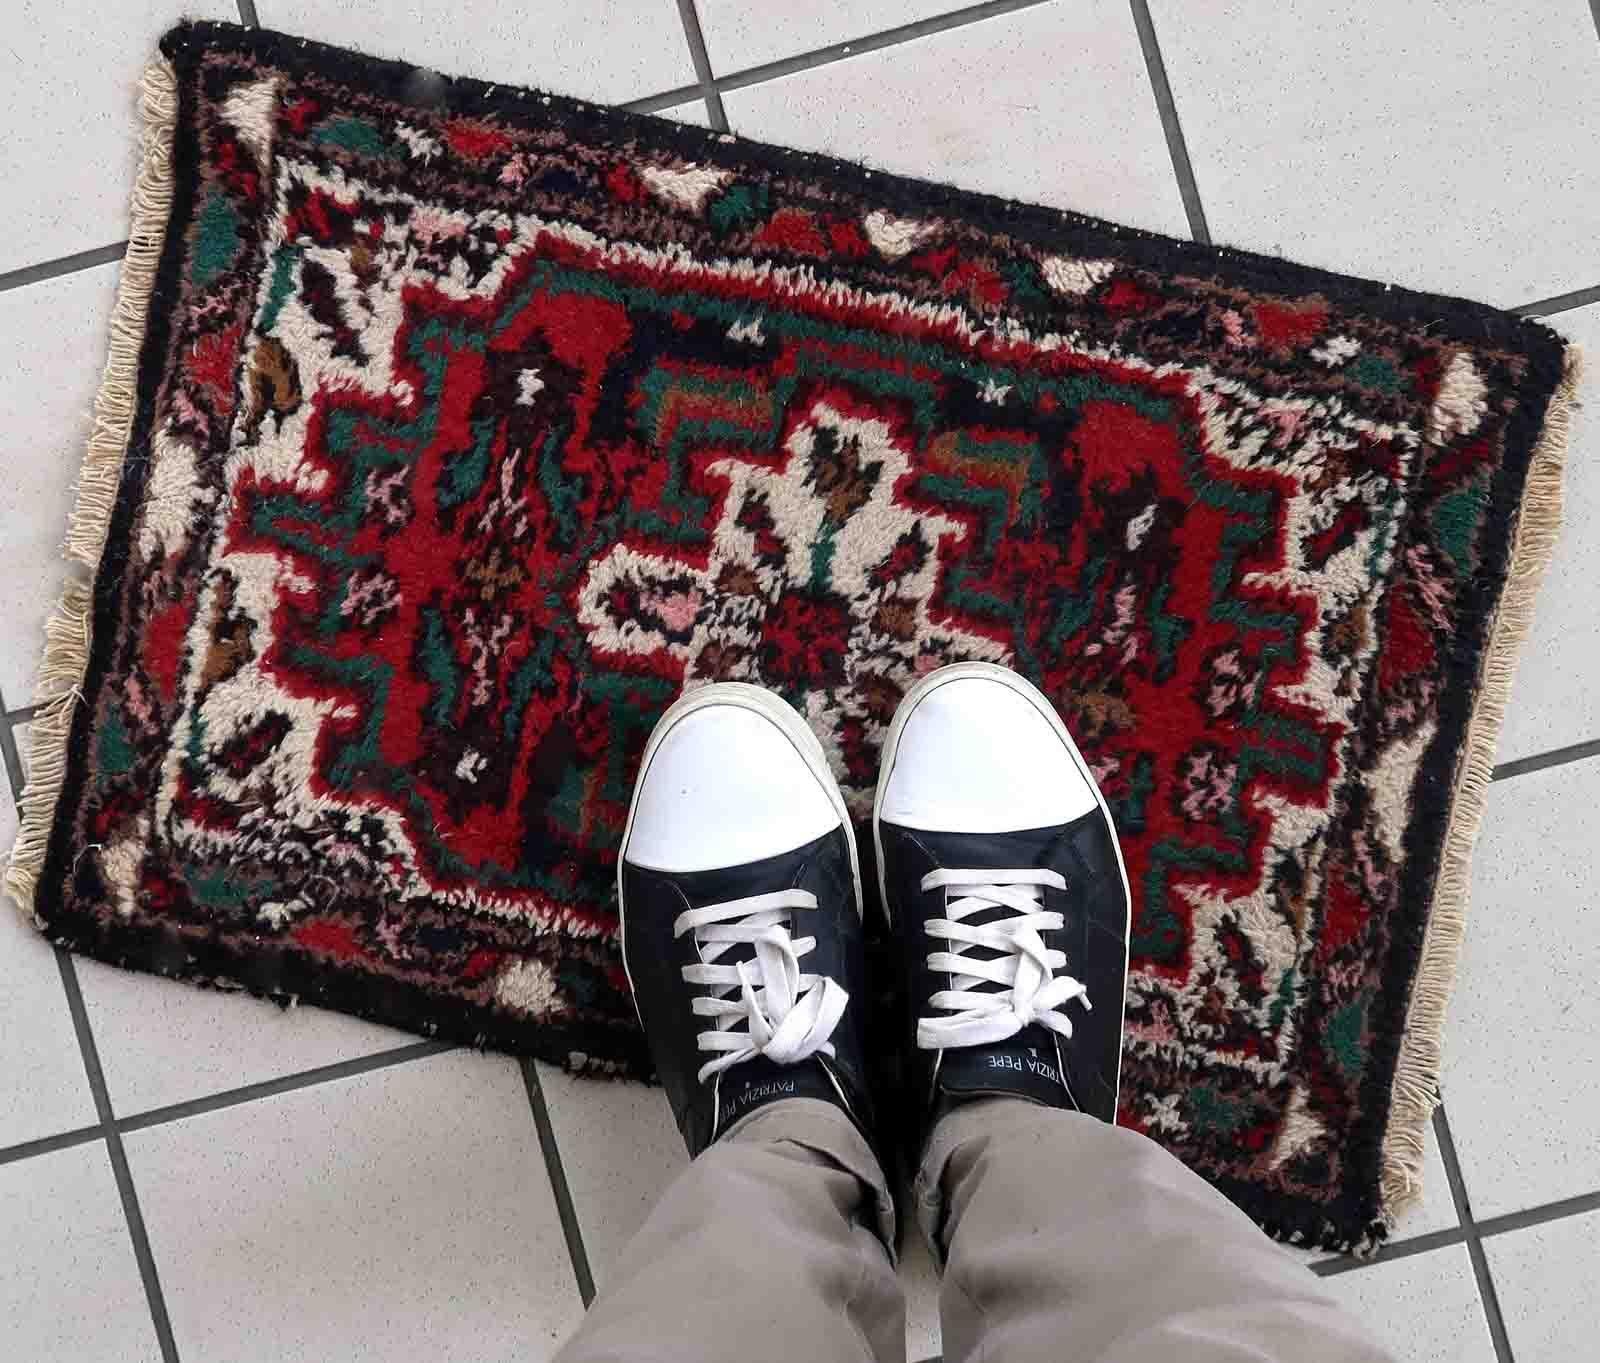 Handgefertigter Vintage-Teppich aus dem Nahen Osten mit traditionellem Medaillonmuster. Der Teppich wurde Ende des 20. Jahrhunderts aus Wolle hergestellt. Es befindet sich in einem guten Originalzustand.

-zustand: original gut,

-etwa: 1970er